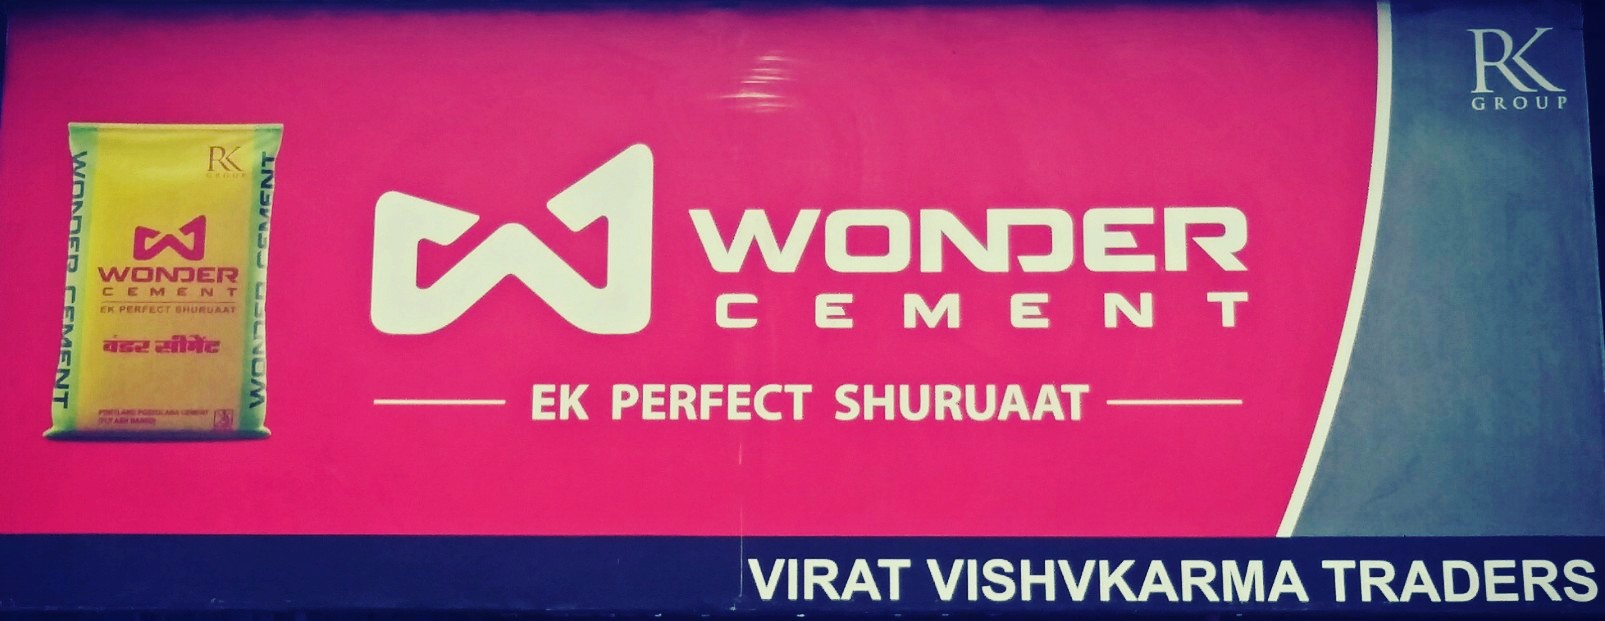 Kiran Patil - Wonder Cement Ltd. | LinkedIn